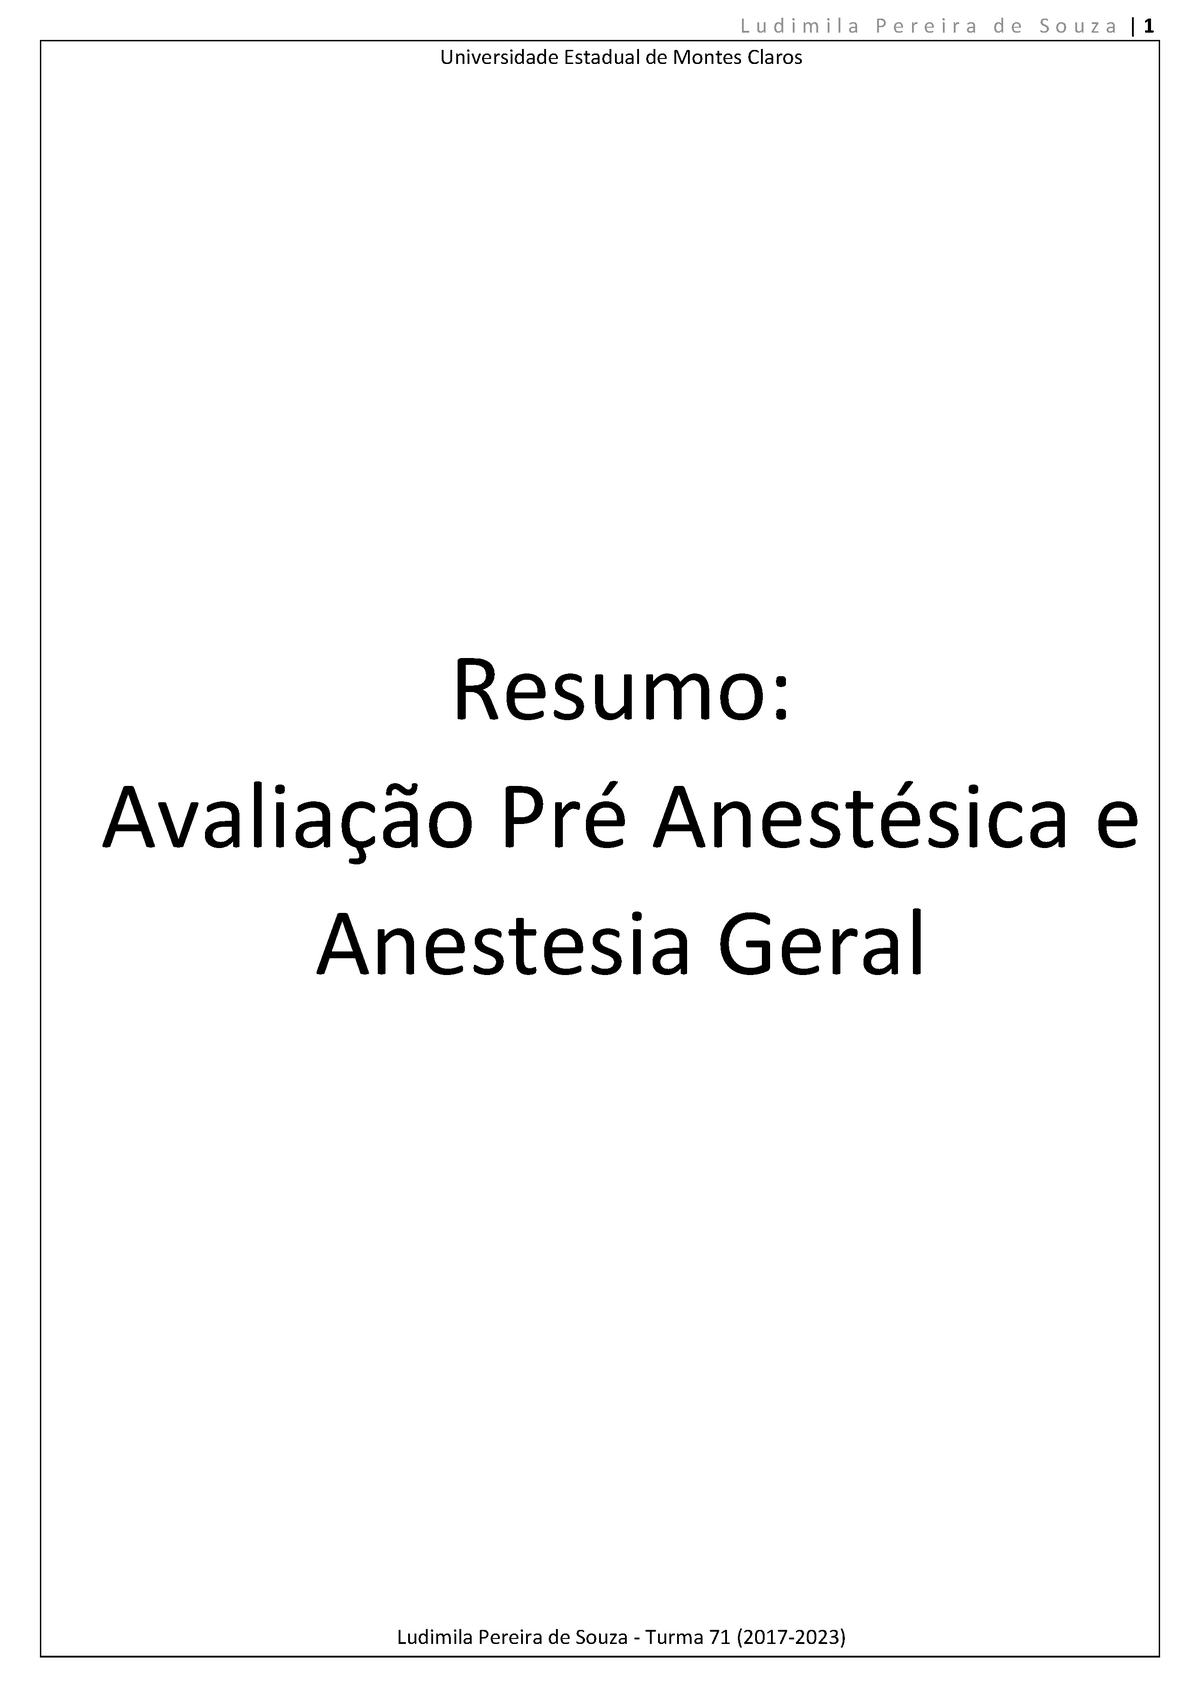 Avaliação Pré Anestésica E Anestesia Geral Warning Tt Undefined